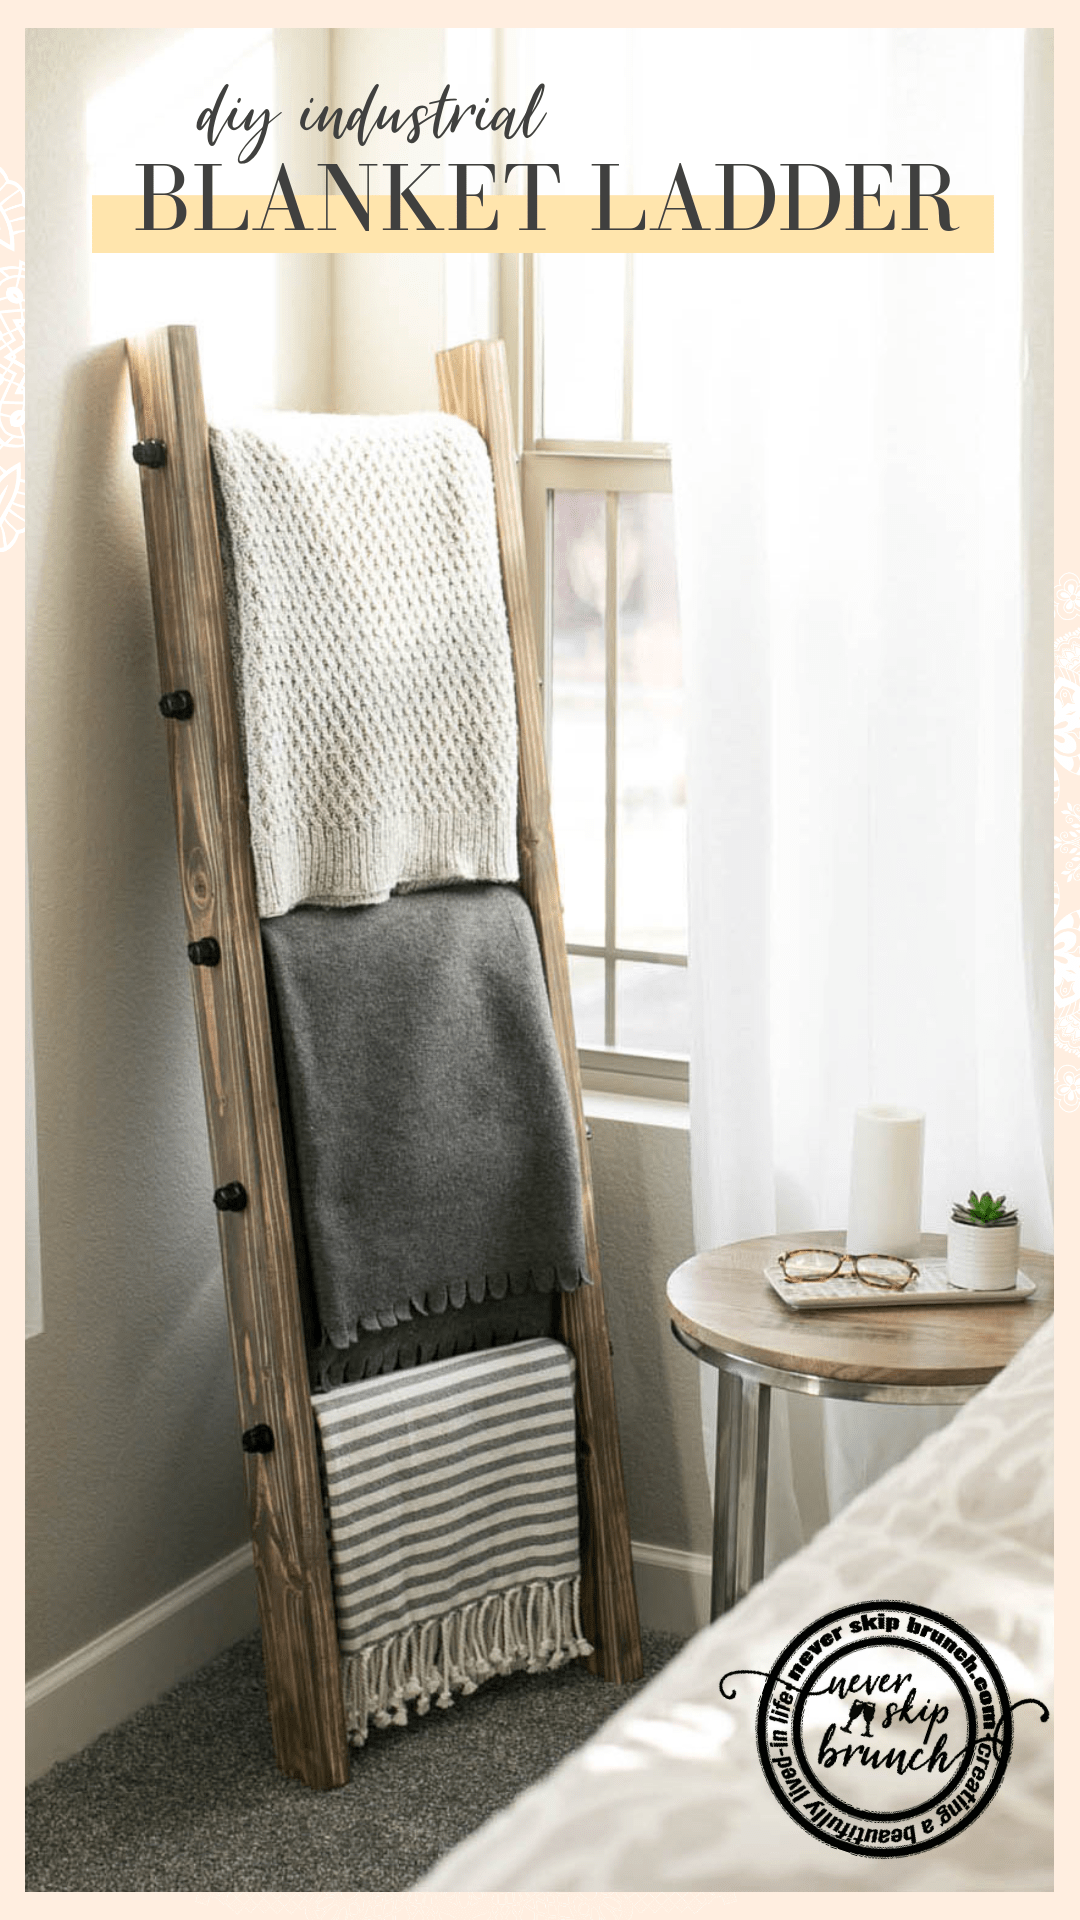 How to make a DIY Industrial Style Blanket Ladder under $60 » NEVER SKIP BRUNCH